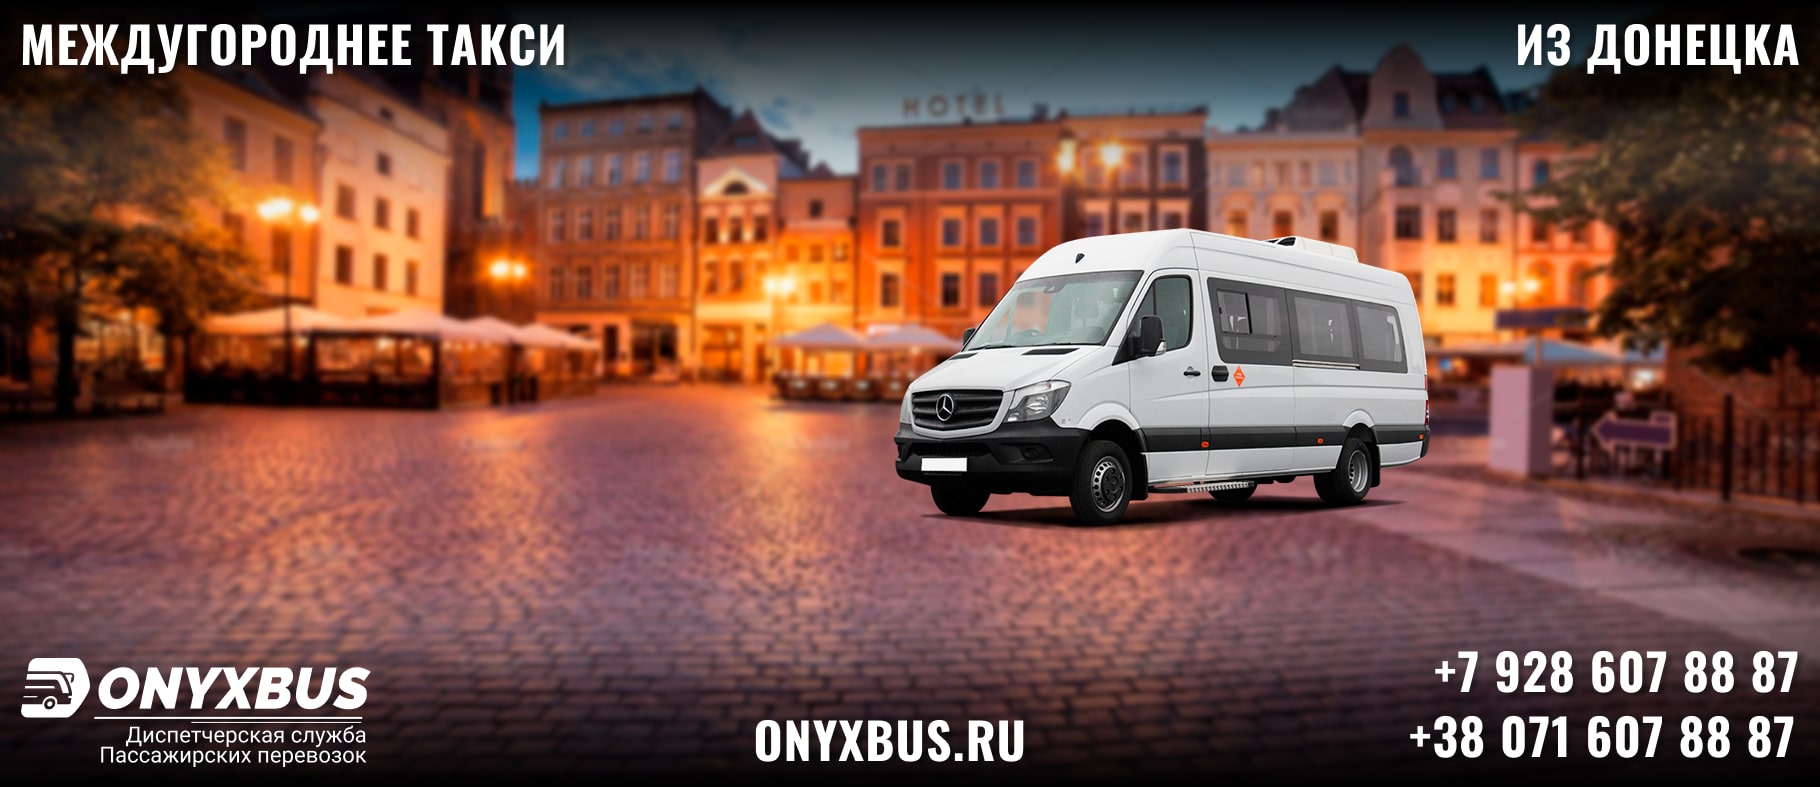 Заказ <br>Микроавтобуса Орел - Донецк